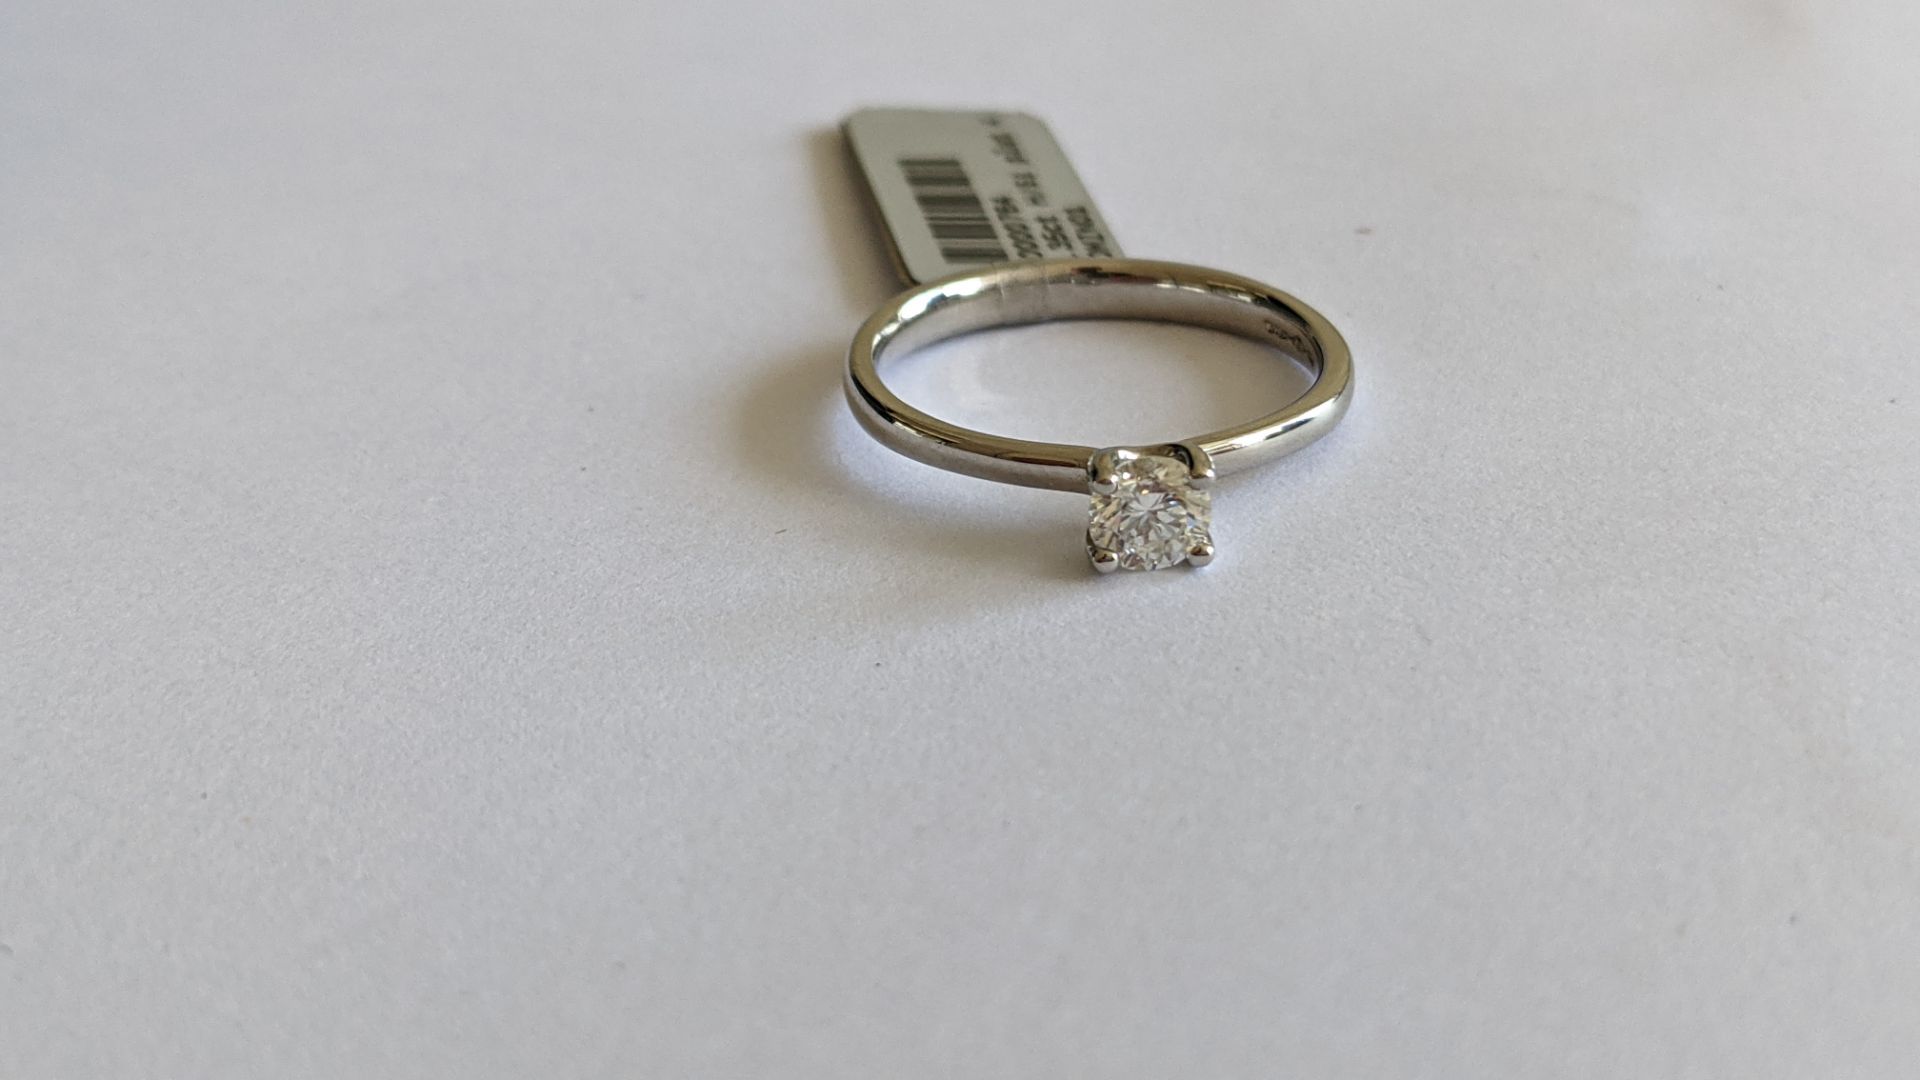 Single stone diamond & platinum 950 ring with 0.35ct H/Si diamond, RRP £1,507 - Image 25 of 29